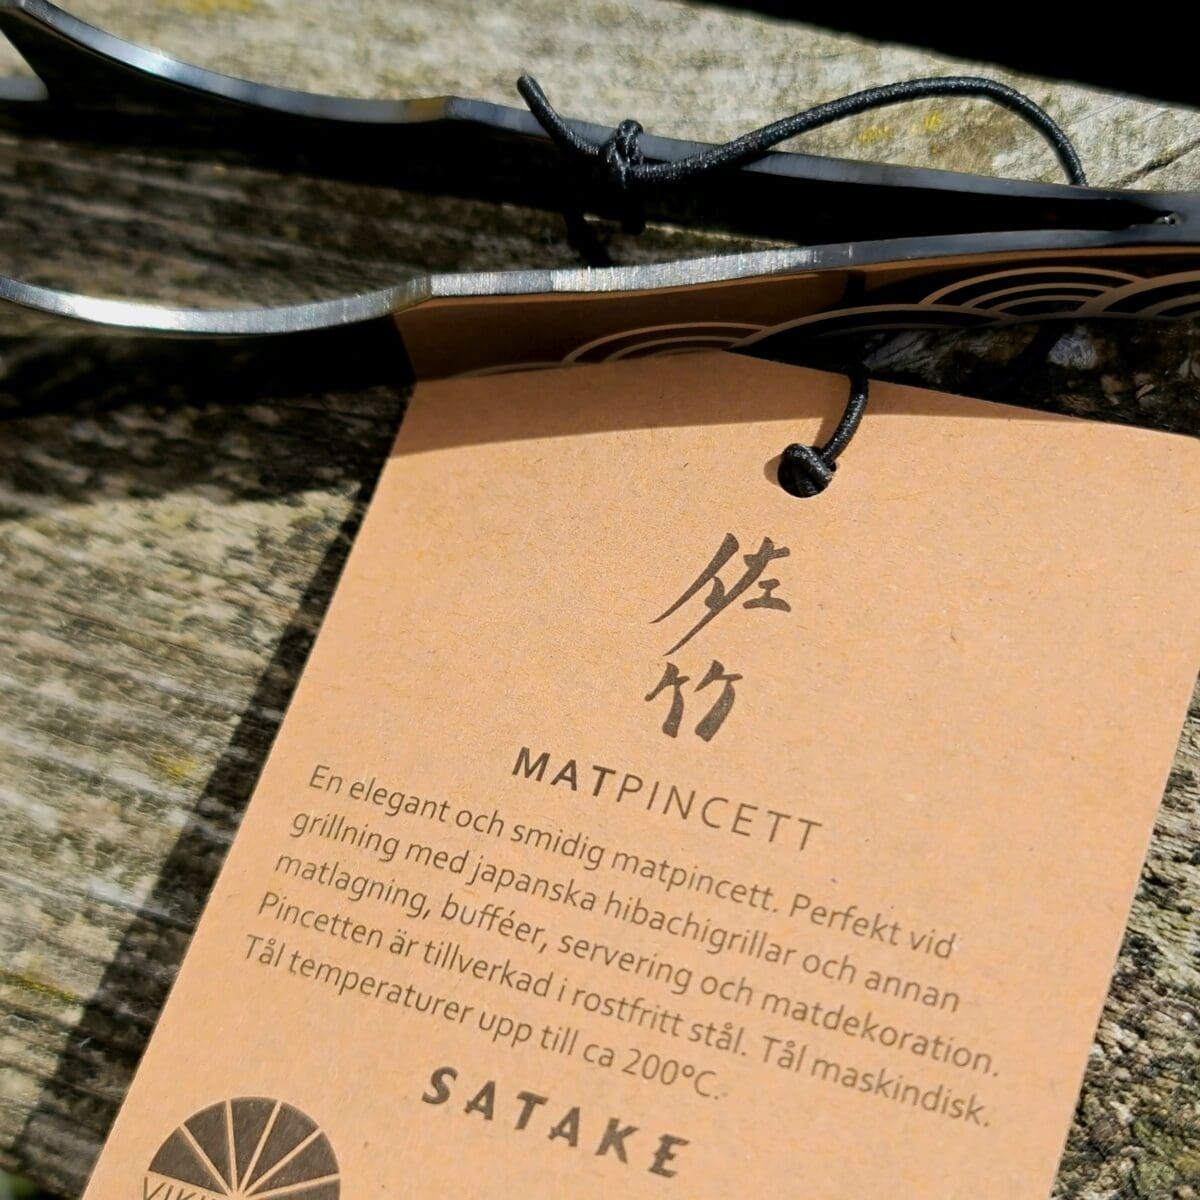 Matpincett - snygg, smidig hibachi-tång, kökspincett för matlagning och uppläggning Ett perfekt tillbehör för din japanska bordsgrill Med en matpincett som denna kan du pilla, vända, trycka och lägga upp utan att komma i kontakt med råvaran - matpincetten blir en förlängning av dina nypor! Denna hibachitång blir helt perfekt som tillbehör till din japanska bordsgrill. Hur ofta är man inte där med fingertopparna och - oh ah oh vaaaarmmmt - försöker vända en bit lök i stekpannan, en potatisklyfta i ugnsformen eller något annat där man önskar mer värmetåliga nypor. Här har du lösningen - en kockpincett. Med denna matpincett får du ytterligare räckvidd och kan med ett enkelt handgrepp vända, plocka och klämma på köttskivorna, lökringarna eller potatisklyftorna. En matpincett gör det även lättare att få till snygga uppläggningar, även om du skulle sakna fingertoppskänsla ;)